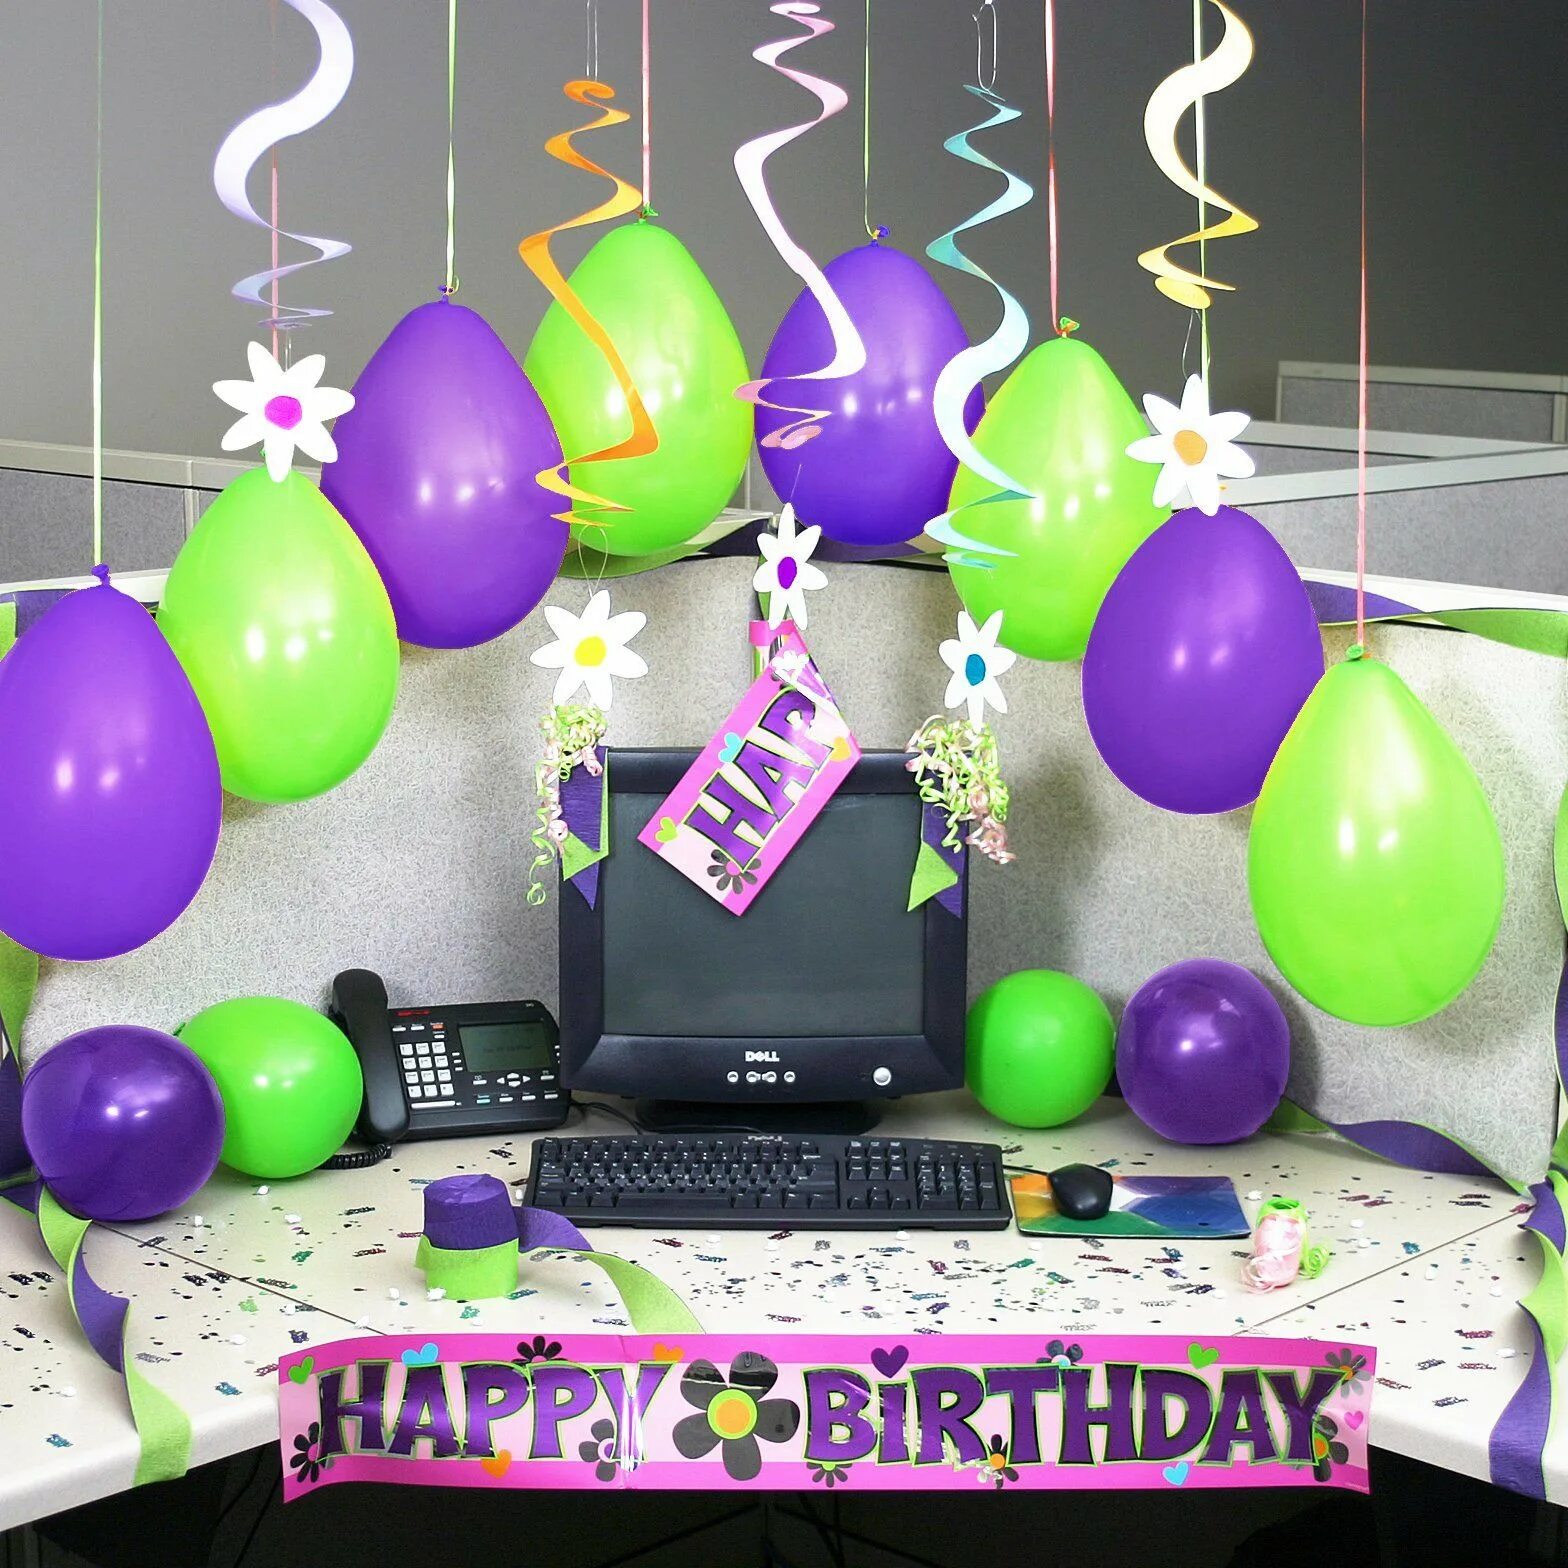 Креативно поздравить с днем рождения коллегу. Украшение офиса на день рождения. Украсить рабочее место коллеге на день рождения. Украсить офис к Дню рождения. Украсить кабинет к Дню рождения.